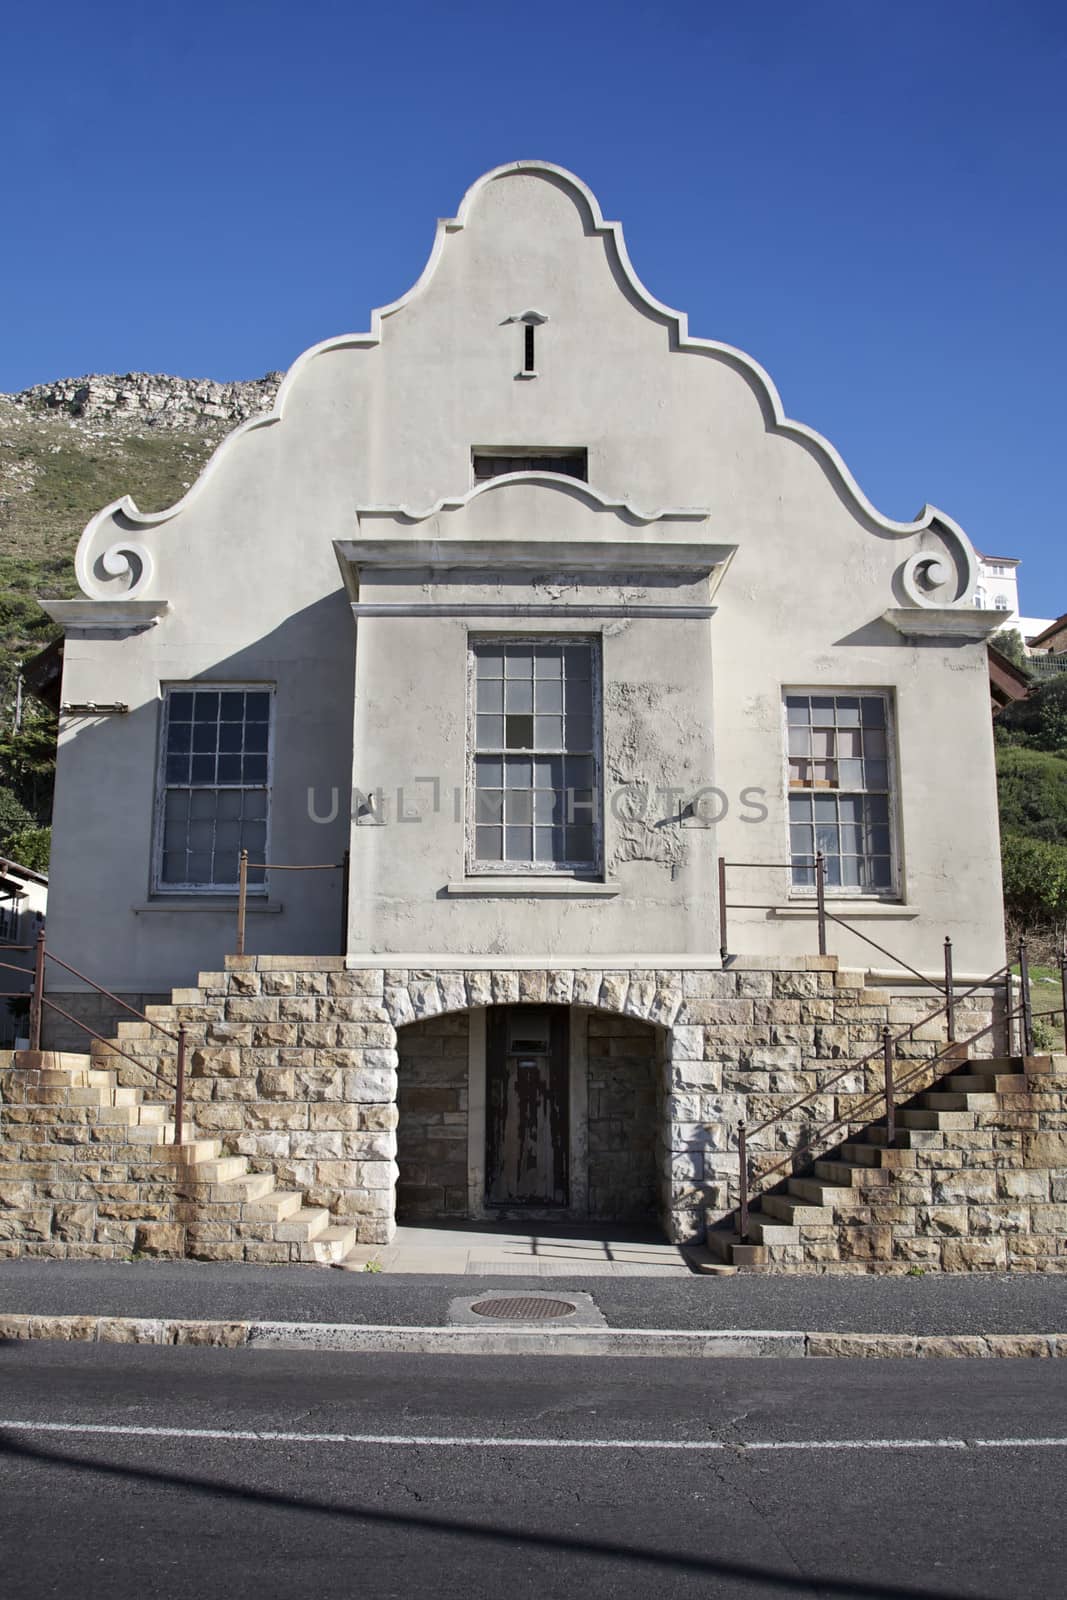 Cape Dutch Building in Cape Town